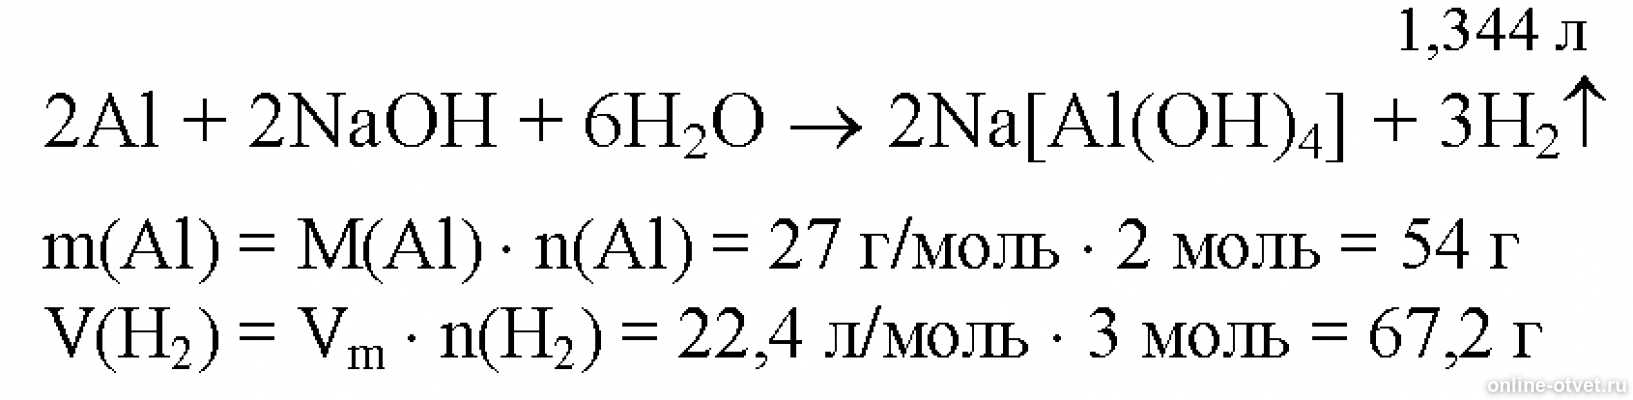 Алюминий и гидроксид натрия концентрированный реакция. Алюминий плюс раствор гидроксида натрия. Алюминий и раствор едкого натра. Алюминий с избытком раствора гидроксида натрия. Алюминий и избыток гидроксида натрия.